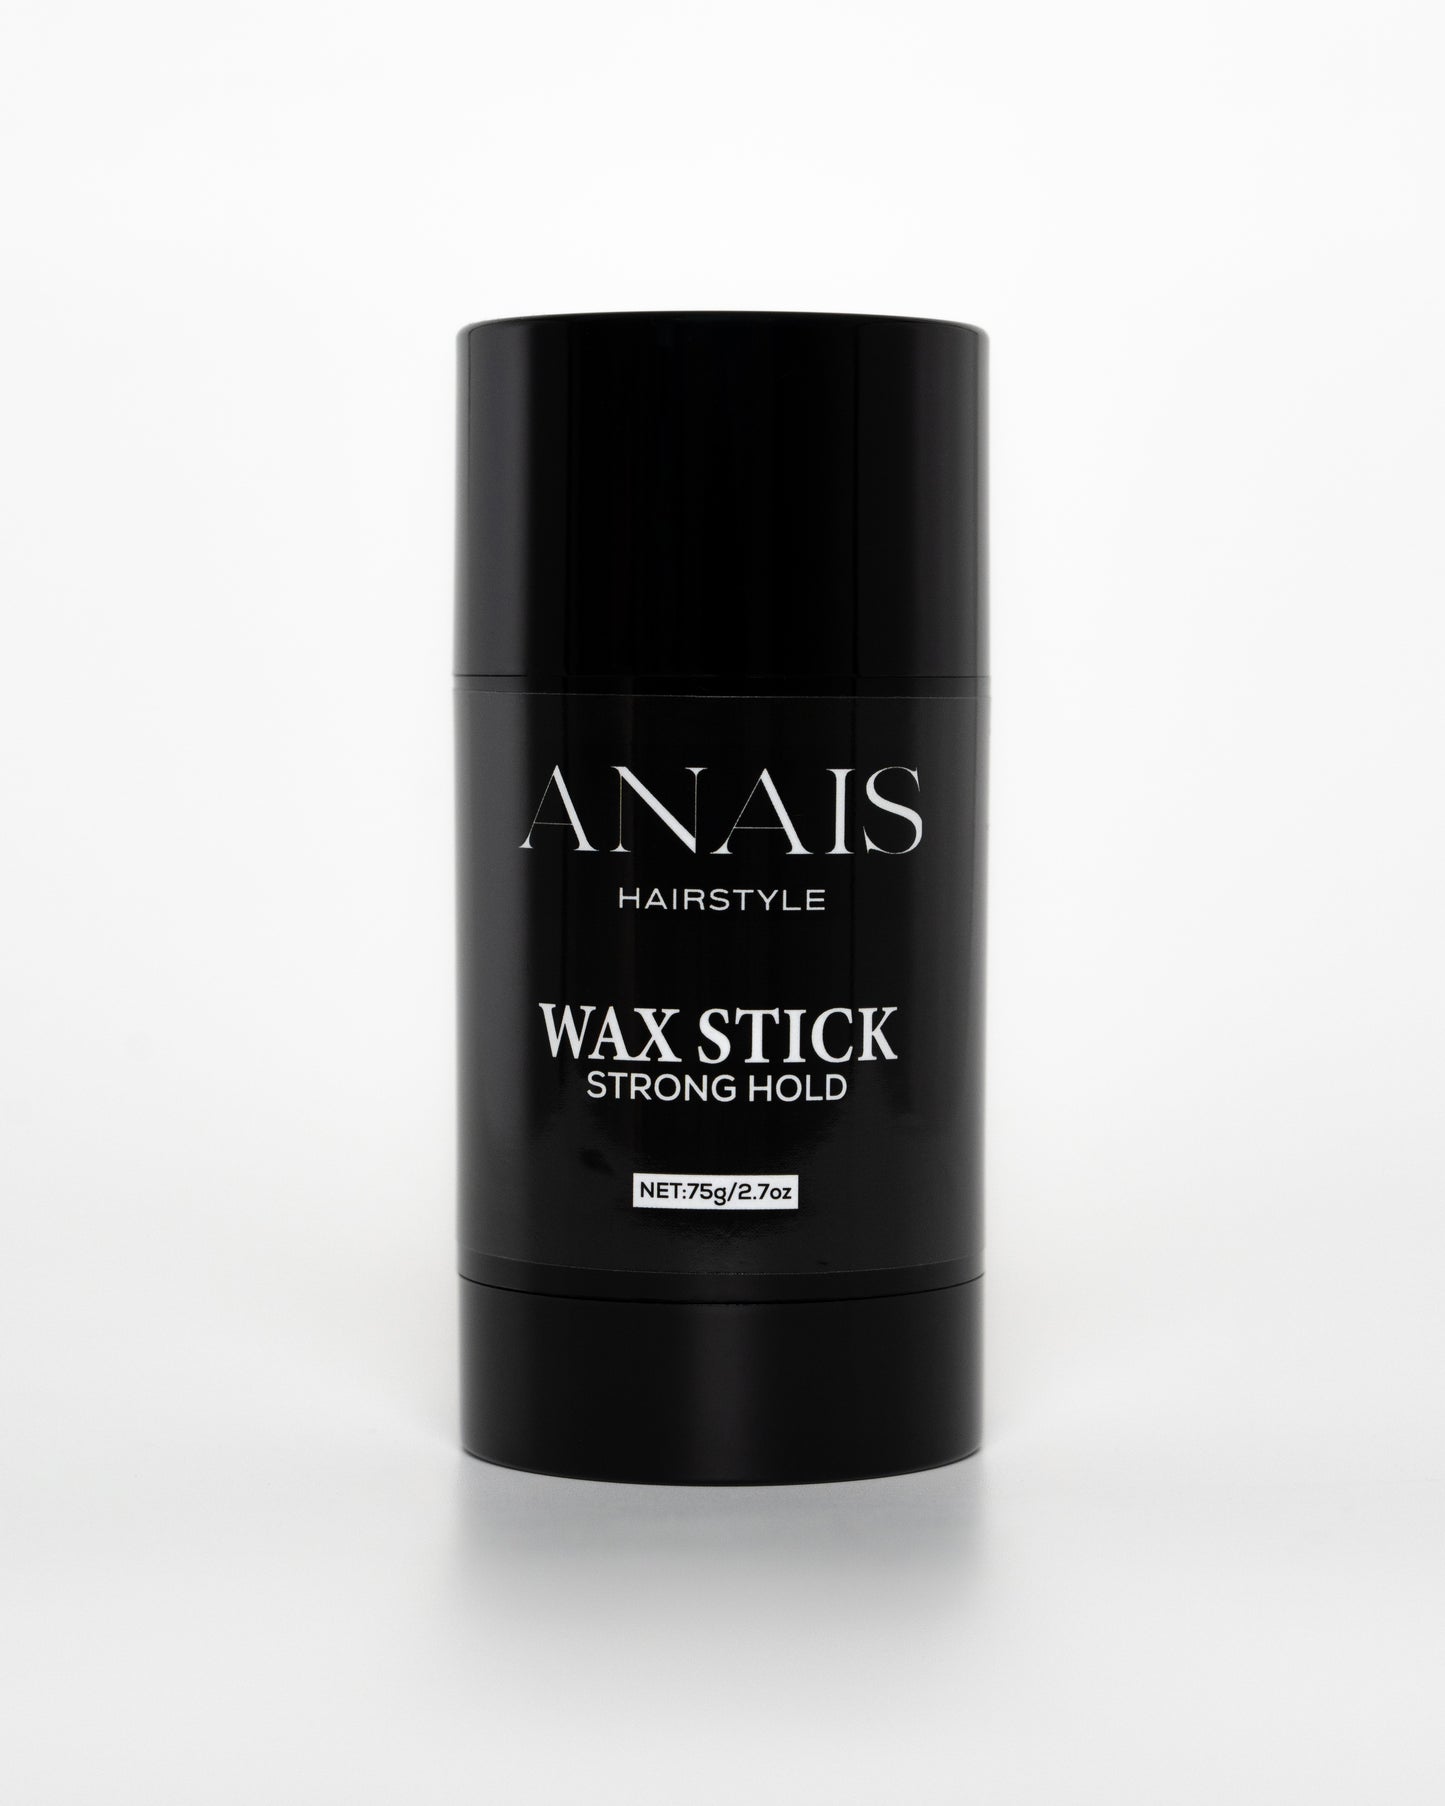 WAX STICK - WAX